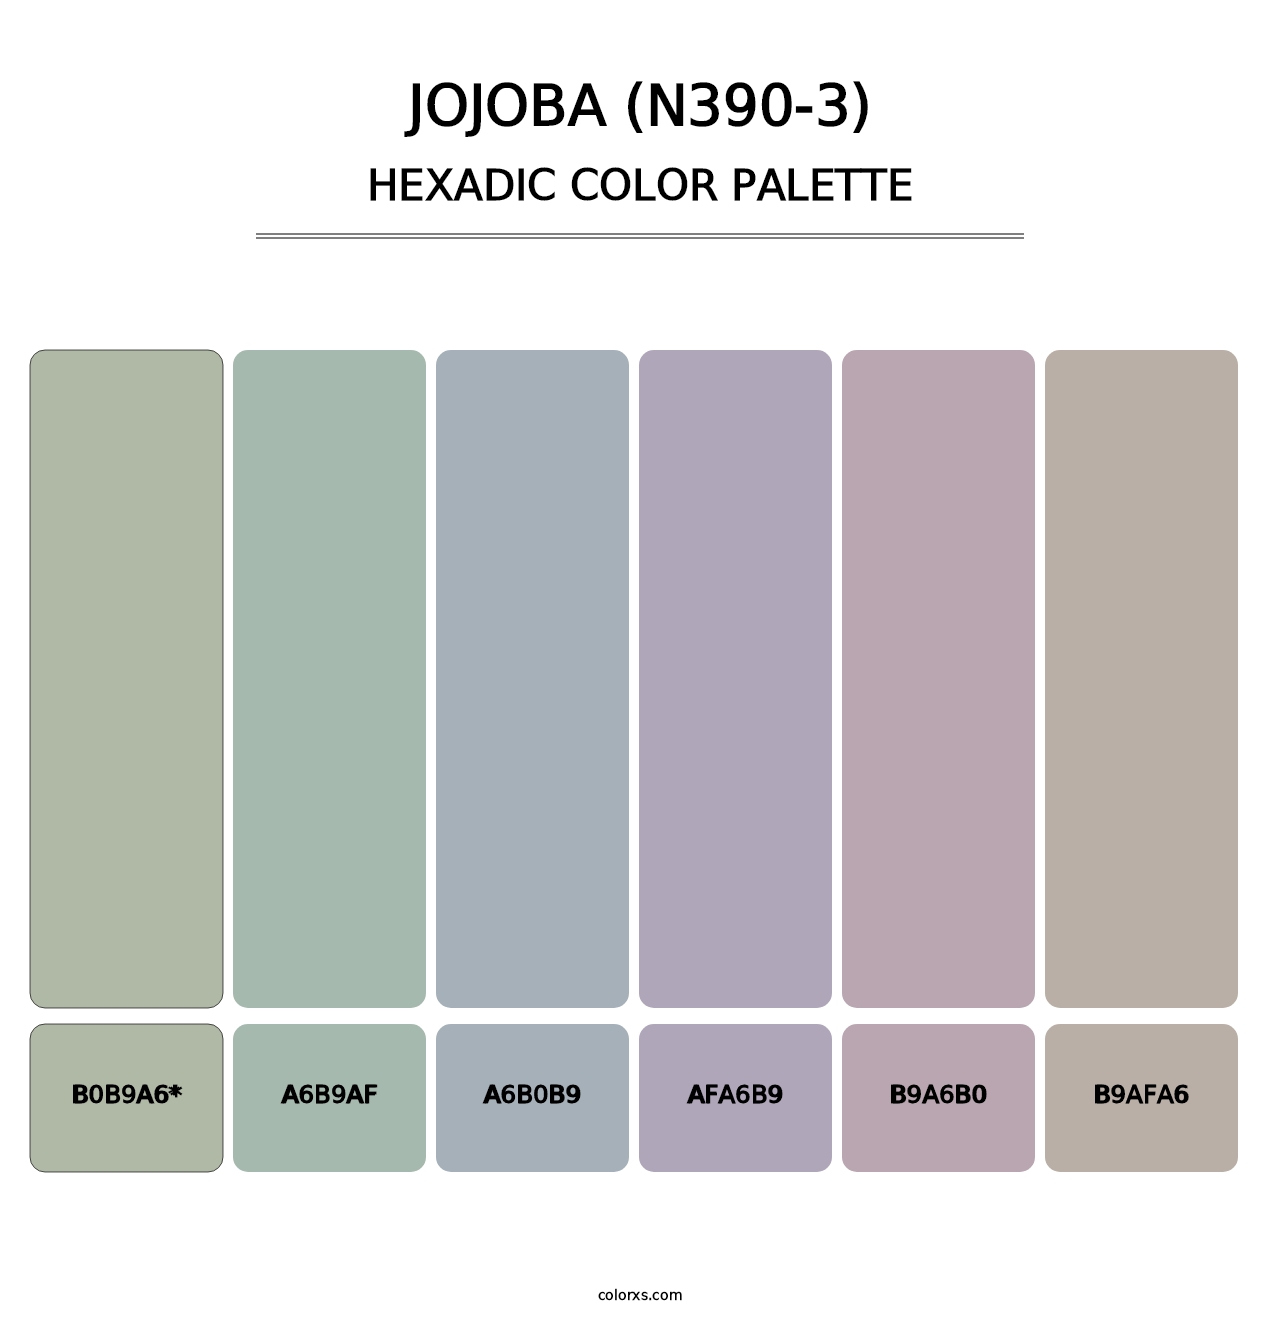 Jojoba (N390-3) - Hexadic Color Palette